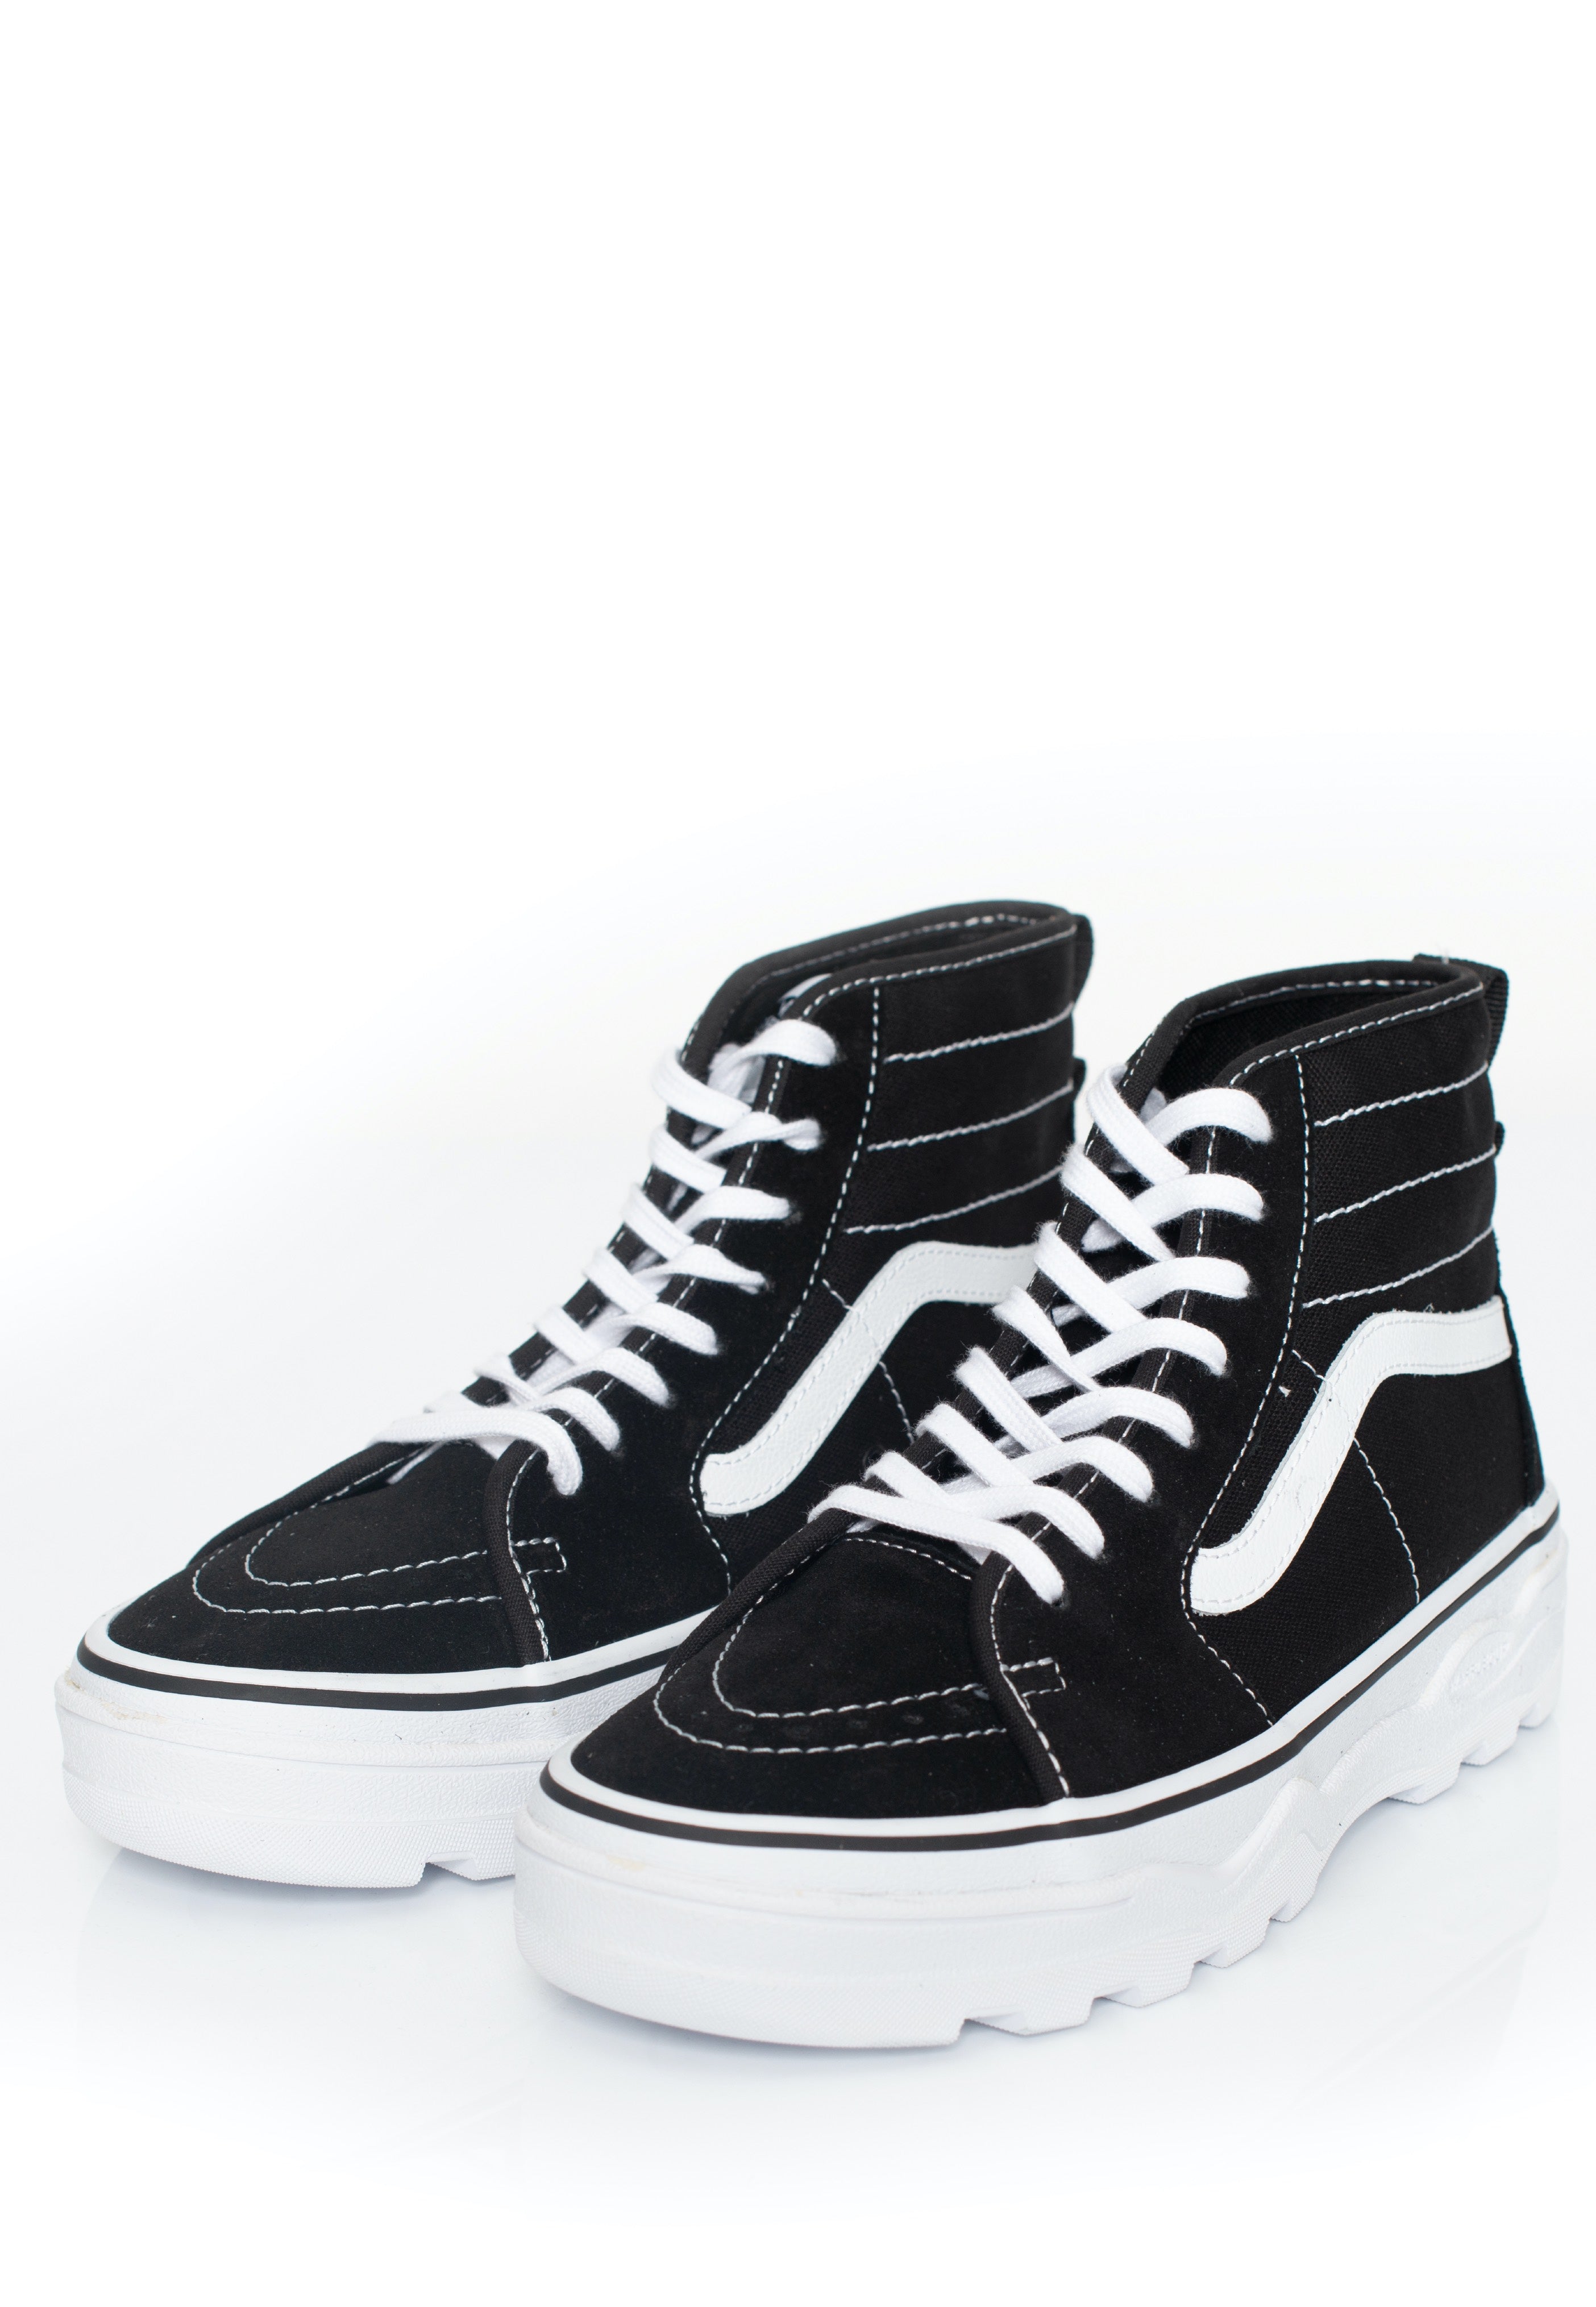 Vans - Sentry Sk8 Hi Black/White - Girl Shoes